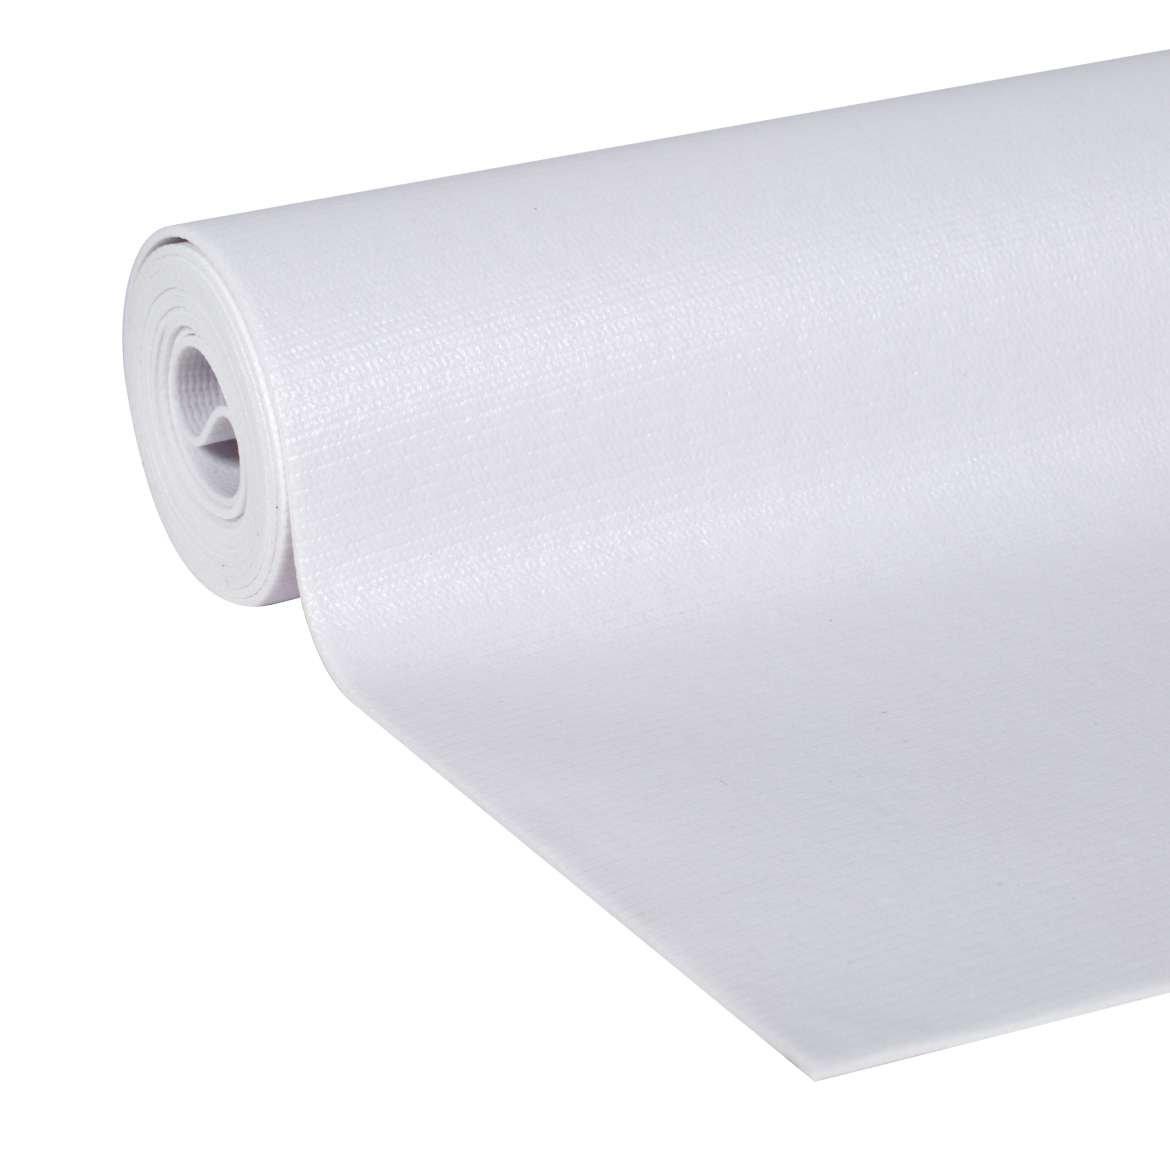 Solid Grip EasyLiner Shelf Liner White, 4 ft Duck Brand